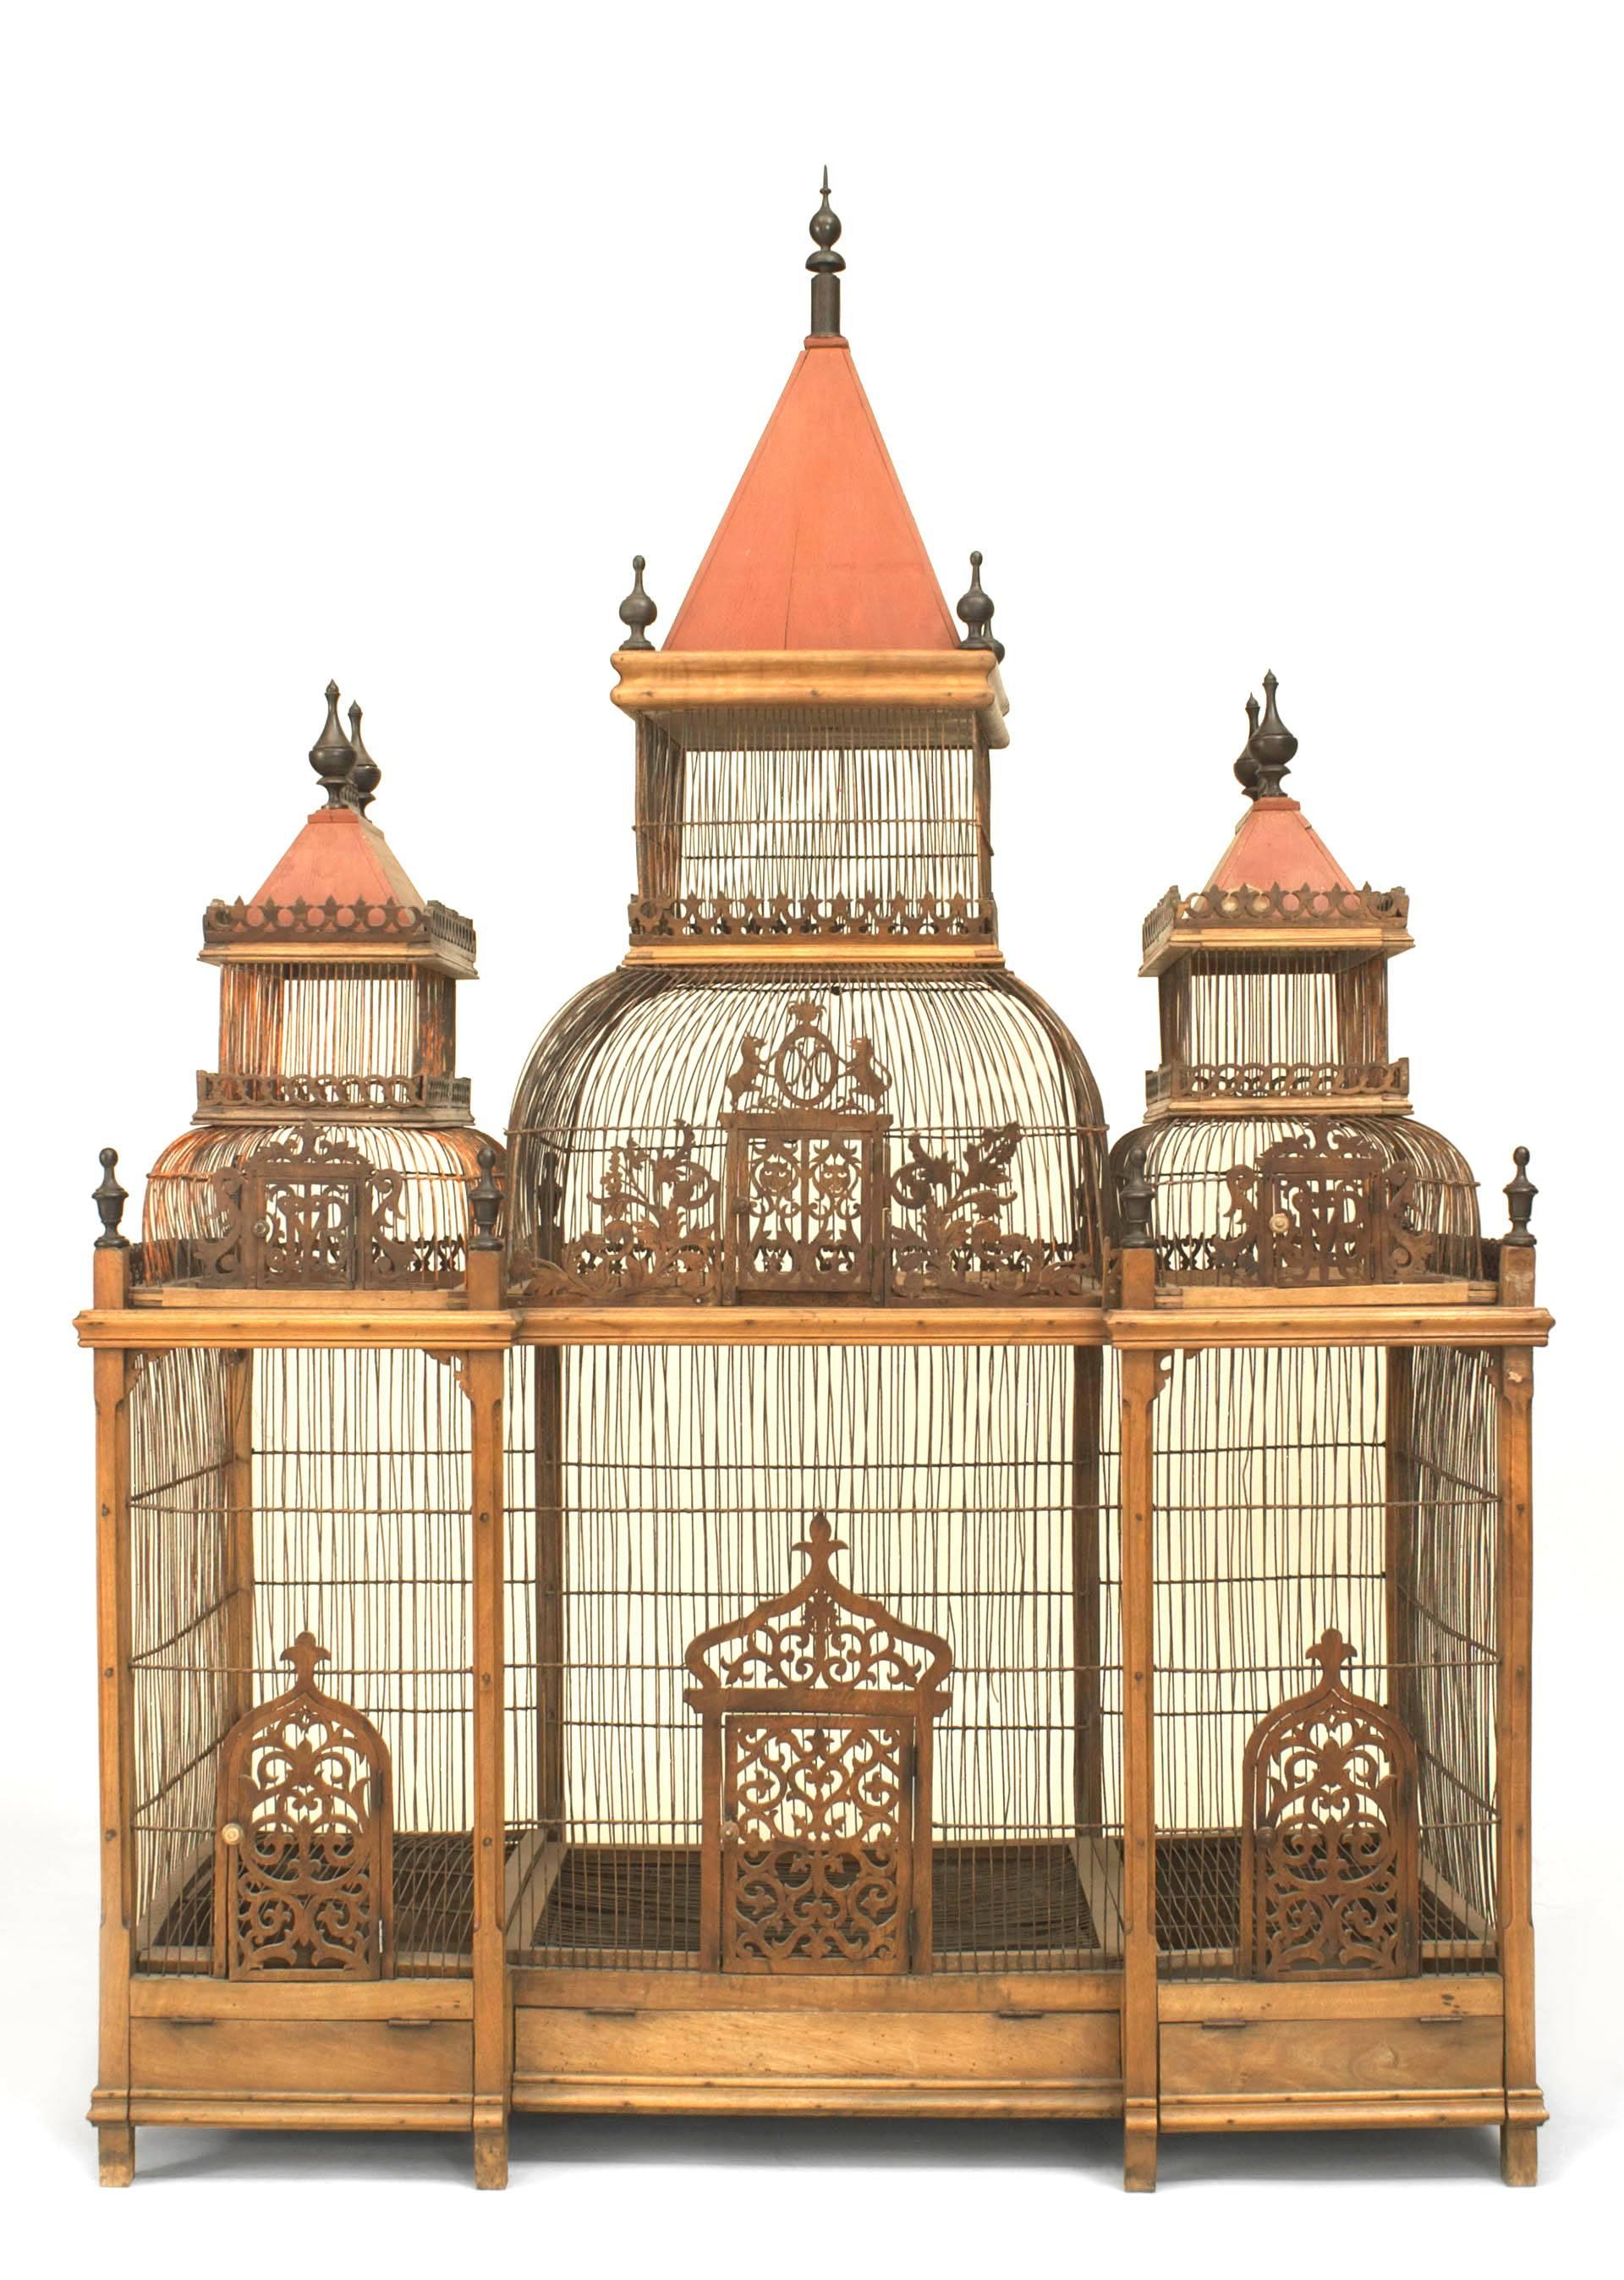 Grande cage à oiseaux de style victorien français (19/20ème siècle) en noyer avec 3 dômes rouges ayant des épis de faîtage ébénisés et garnis de sculptures filigranes.
